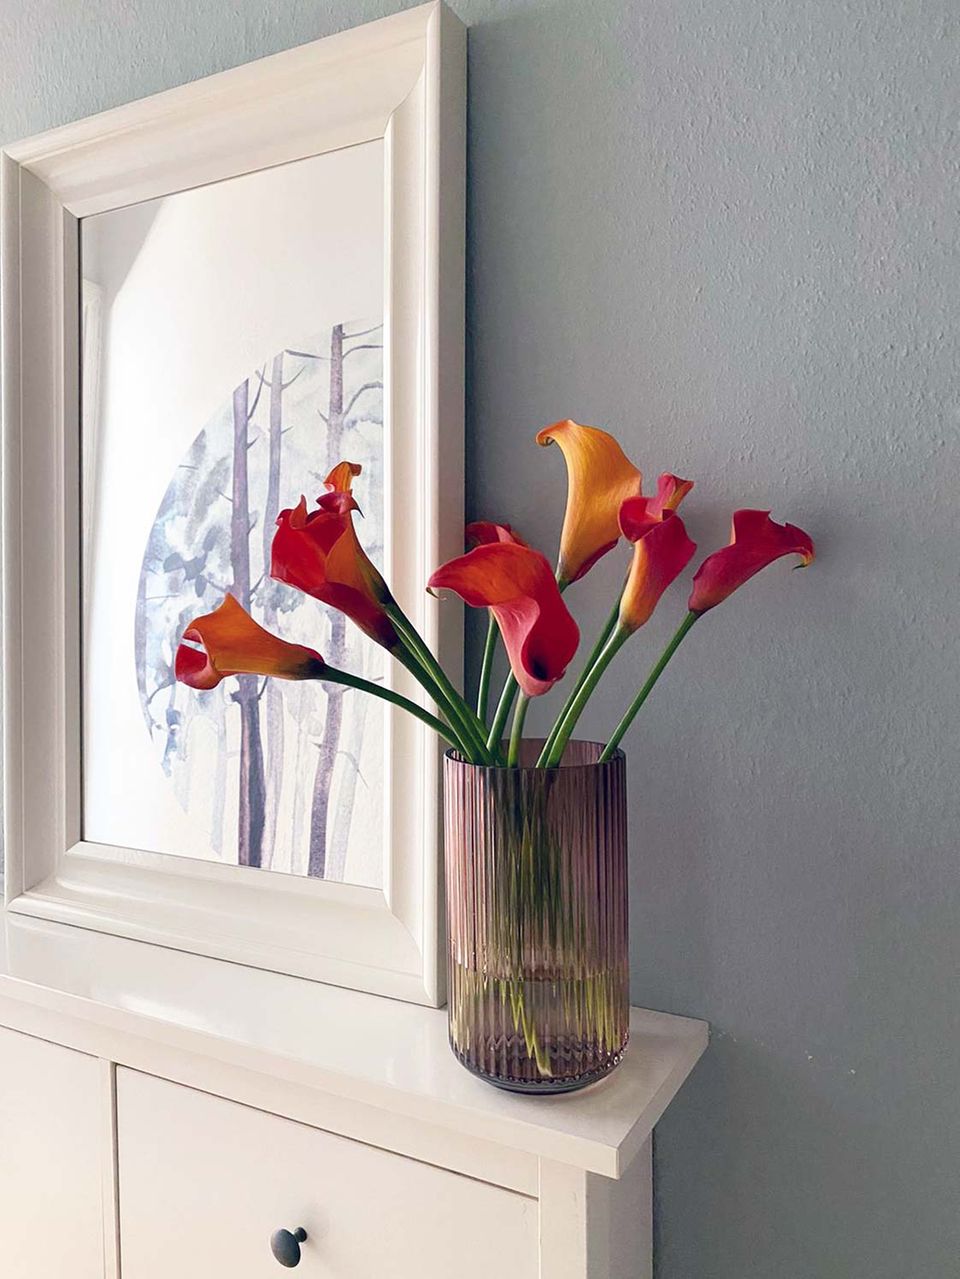 Glasvase mit roten und orangenen Blumen auf einer weißen Kommode